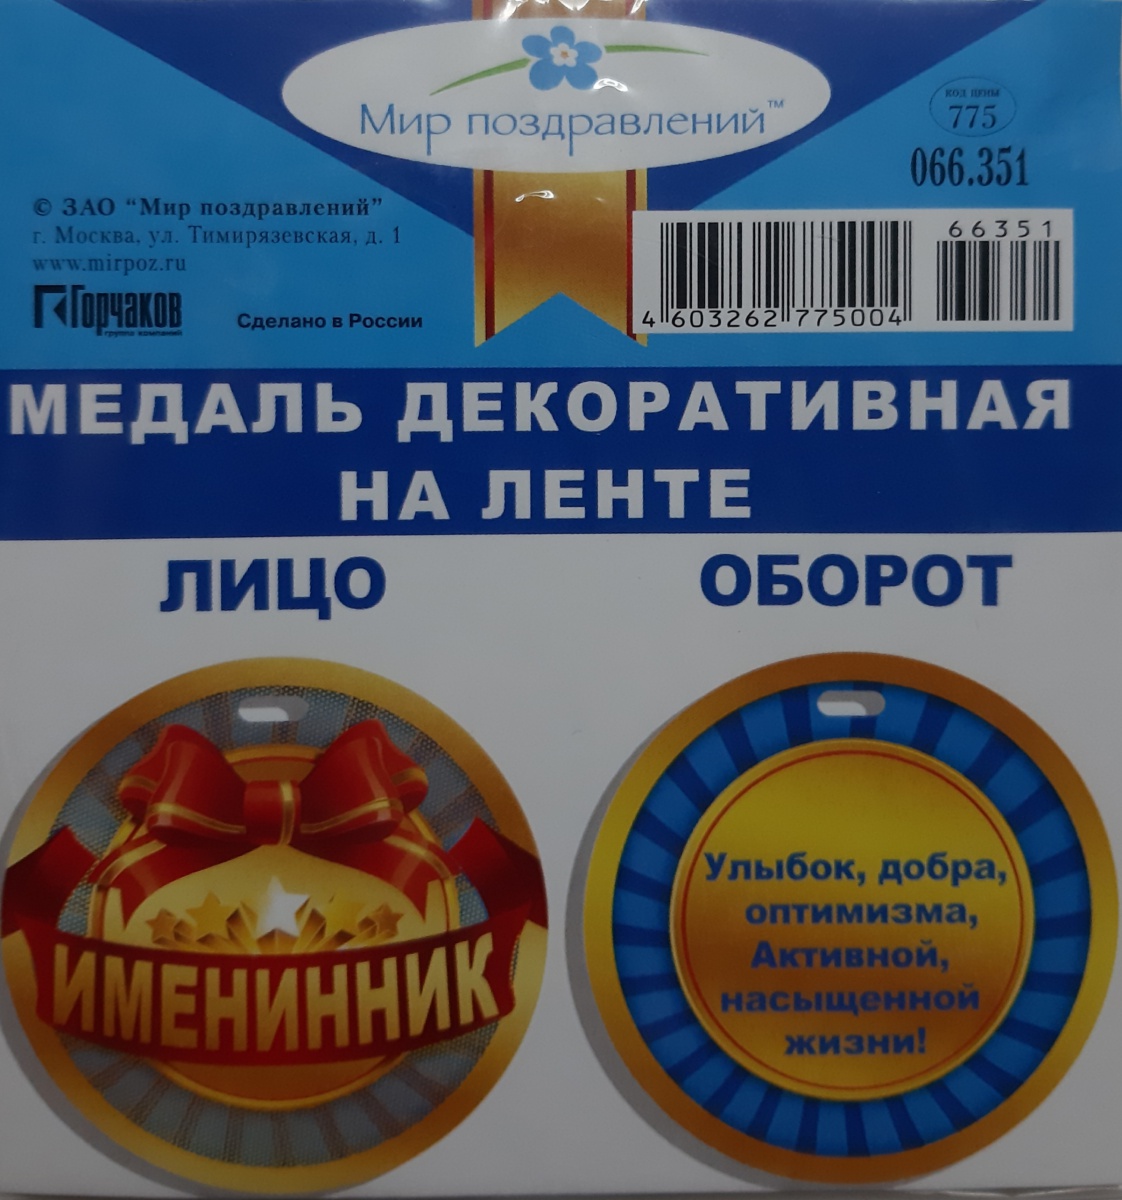 Медаль декоративная на ленте "ИМЕНИННИК"